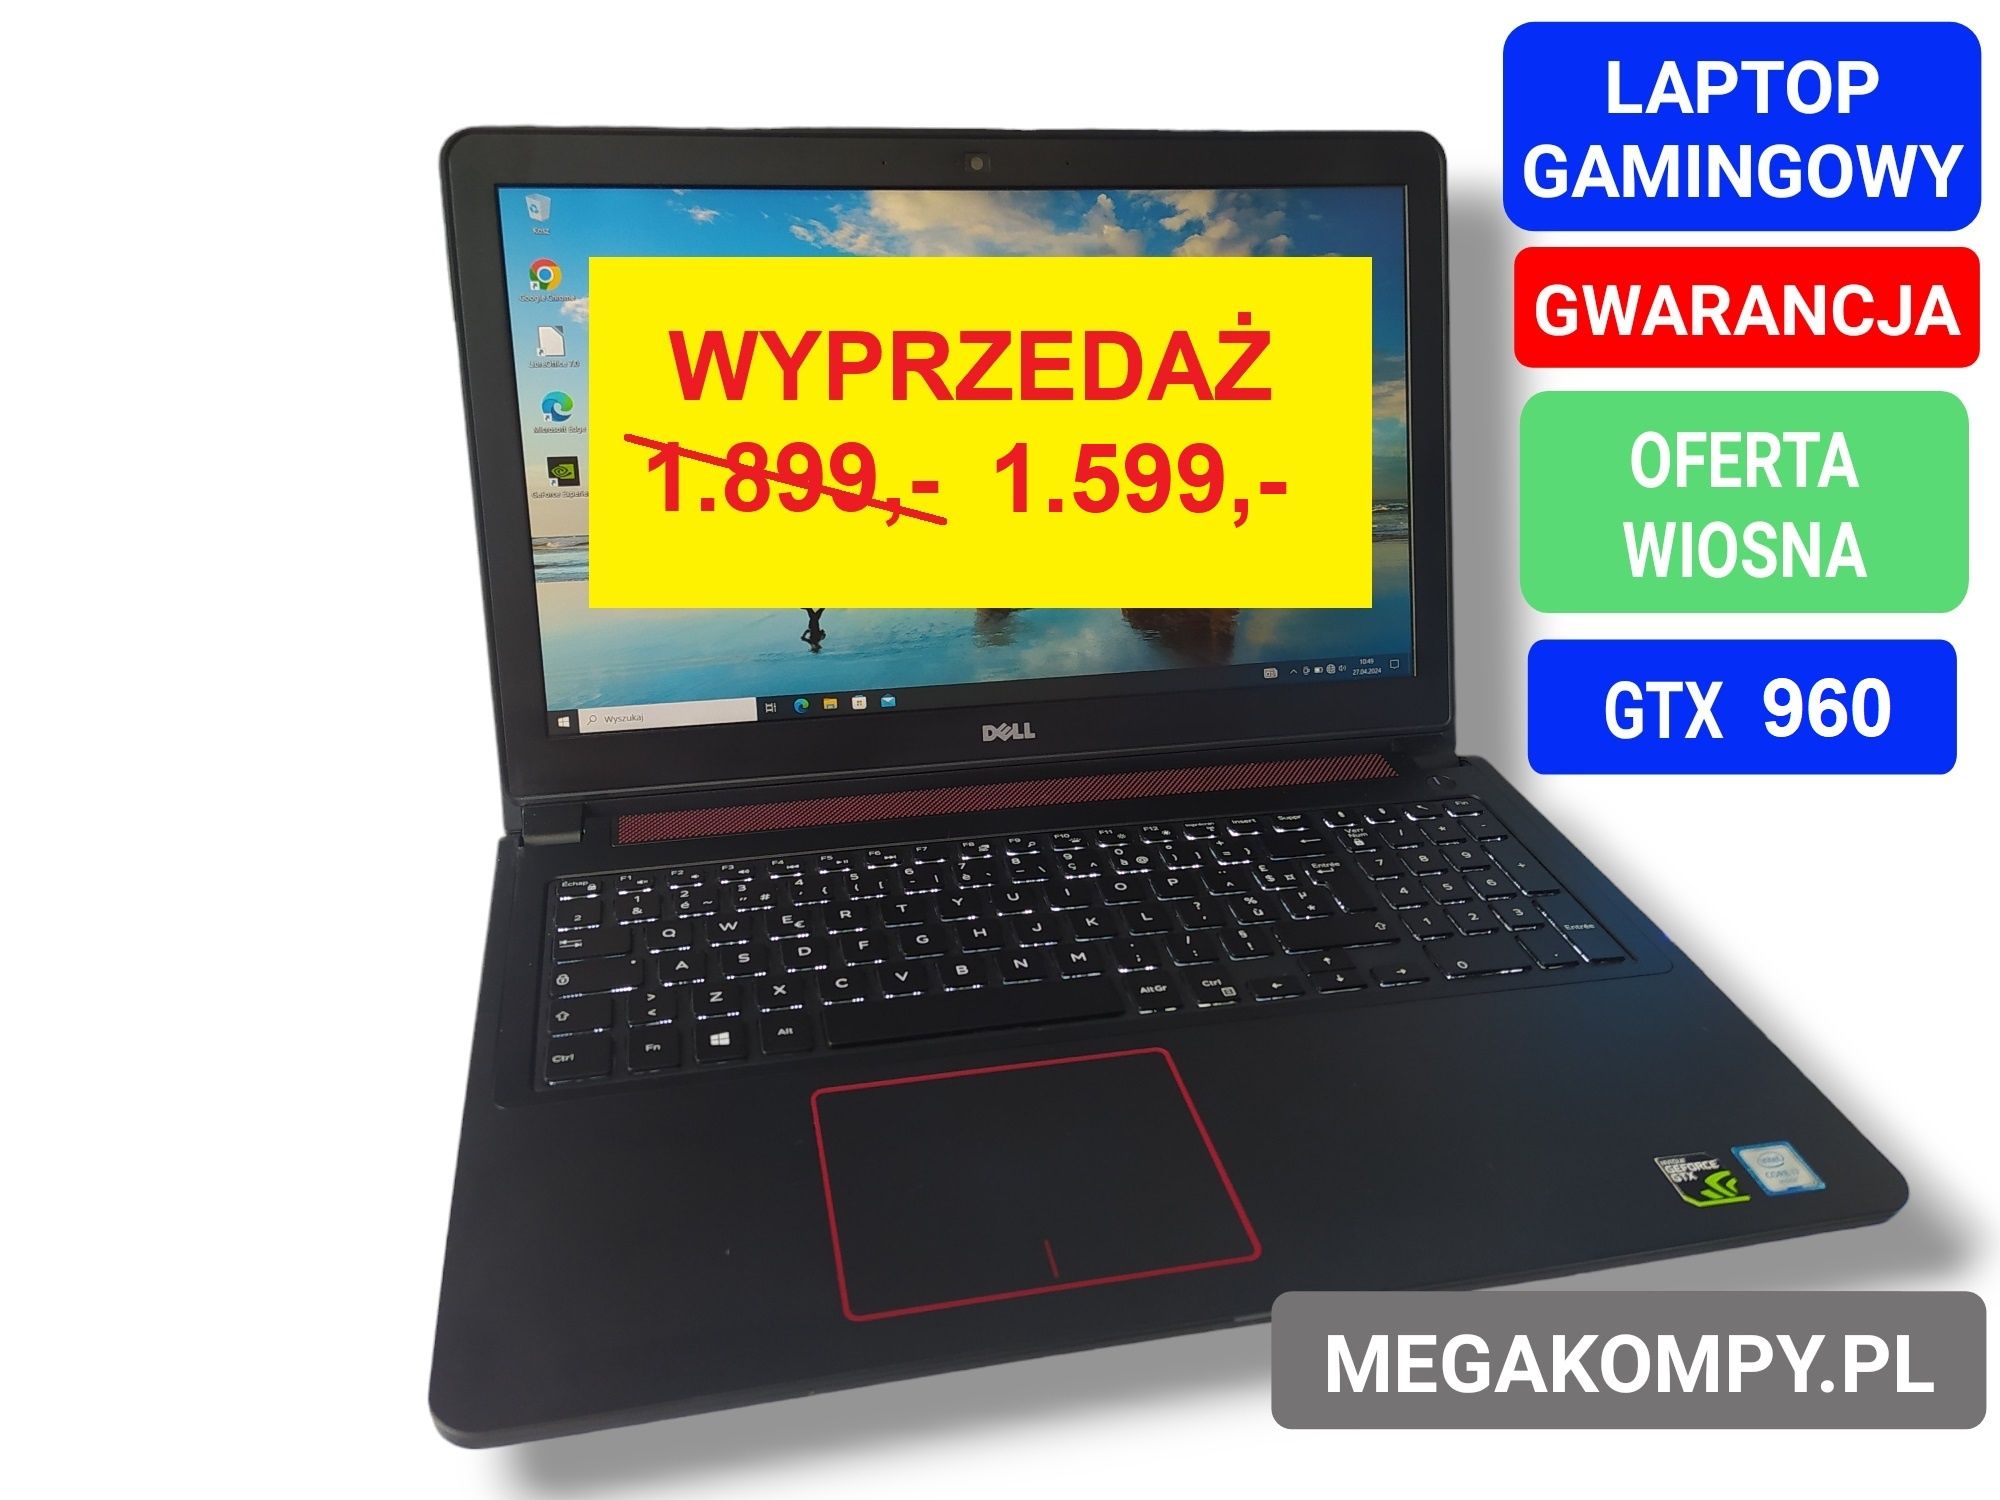 Laptop Gamingowy DELL /proc. i7 /16GB RAM /GTX 960 /SSD 480GB /GWAR.